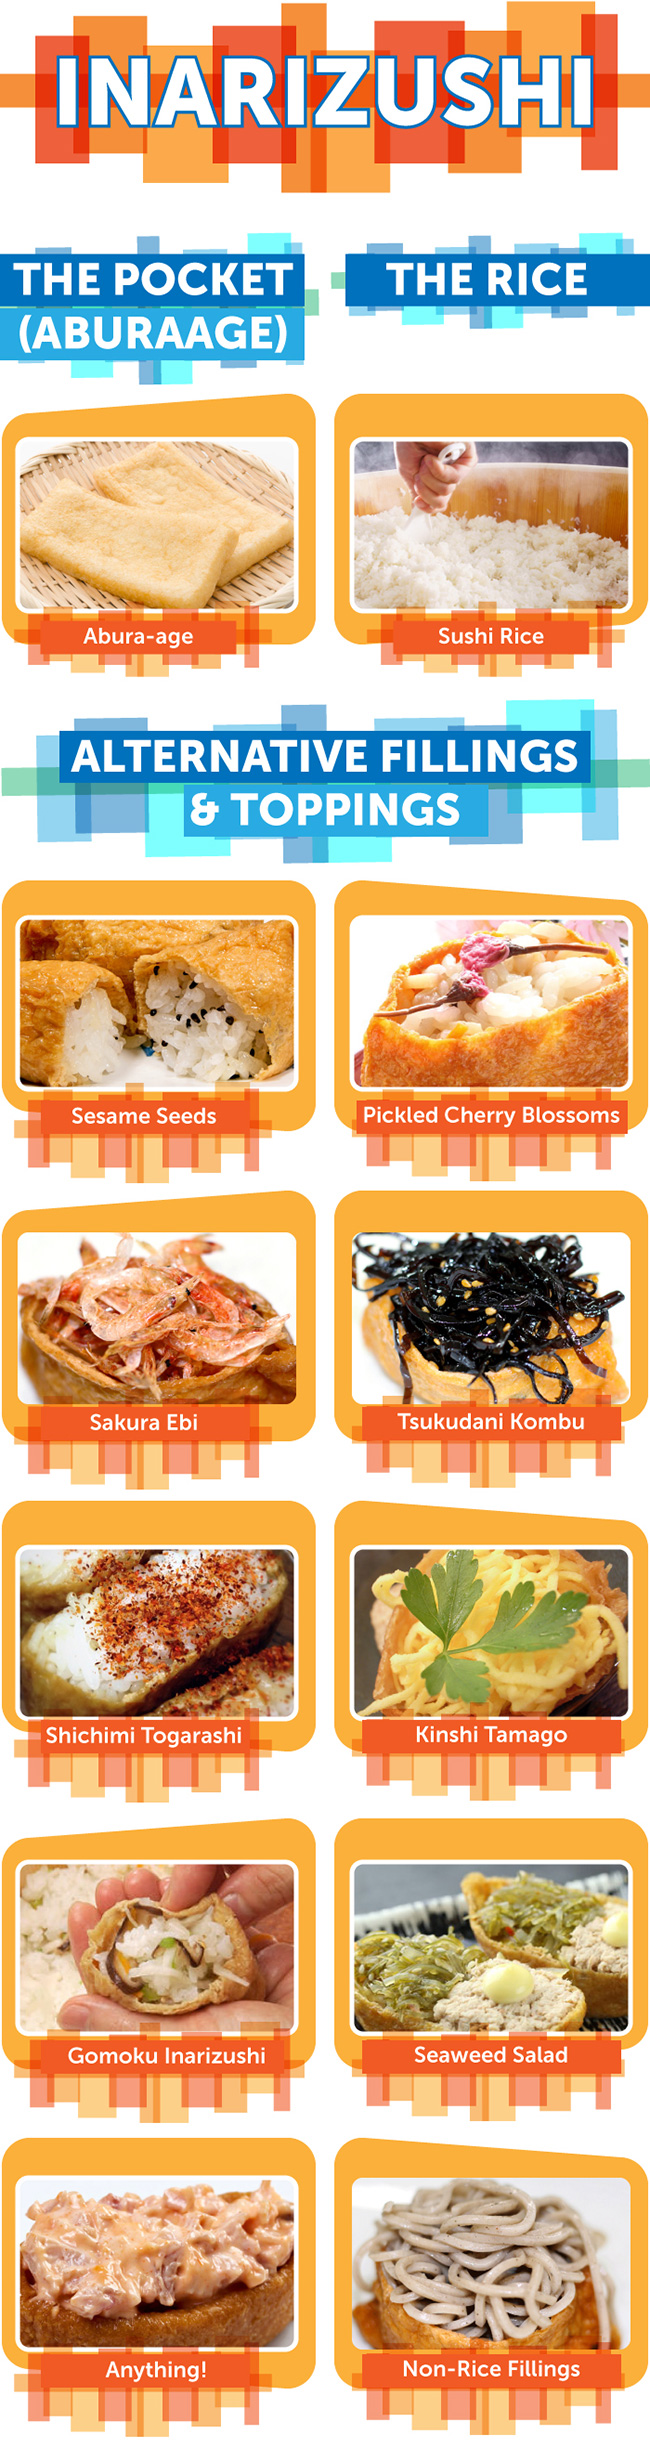 GURUNAVI Japan Restaurant Guide | Let's Japan